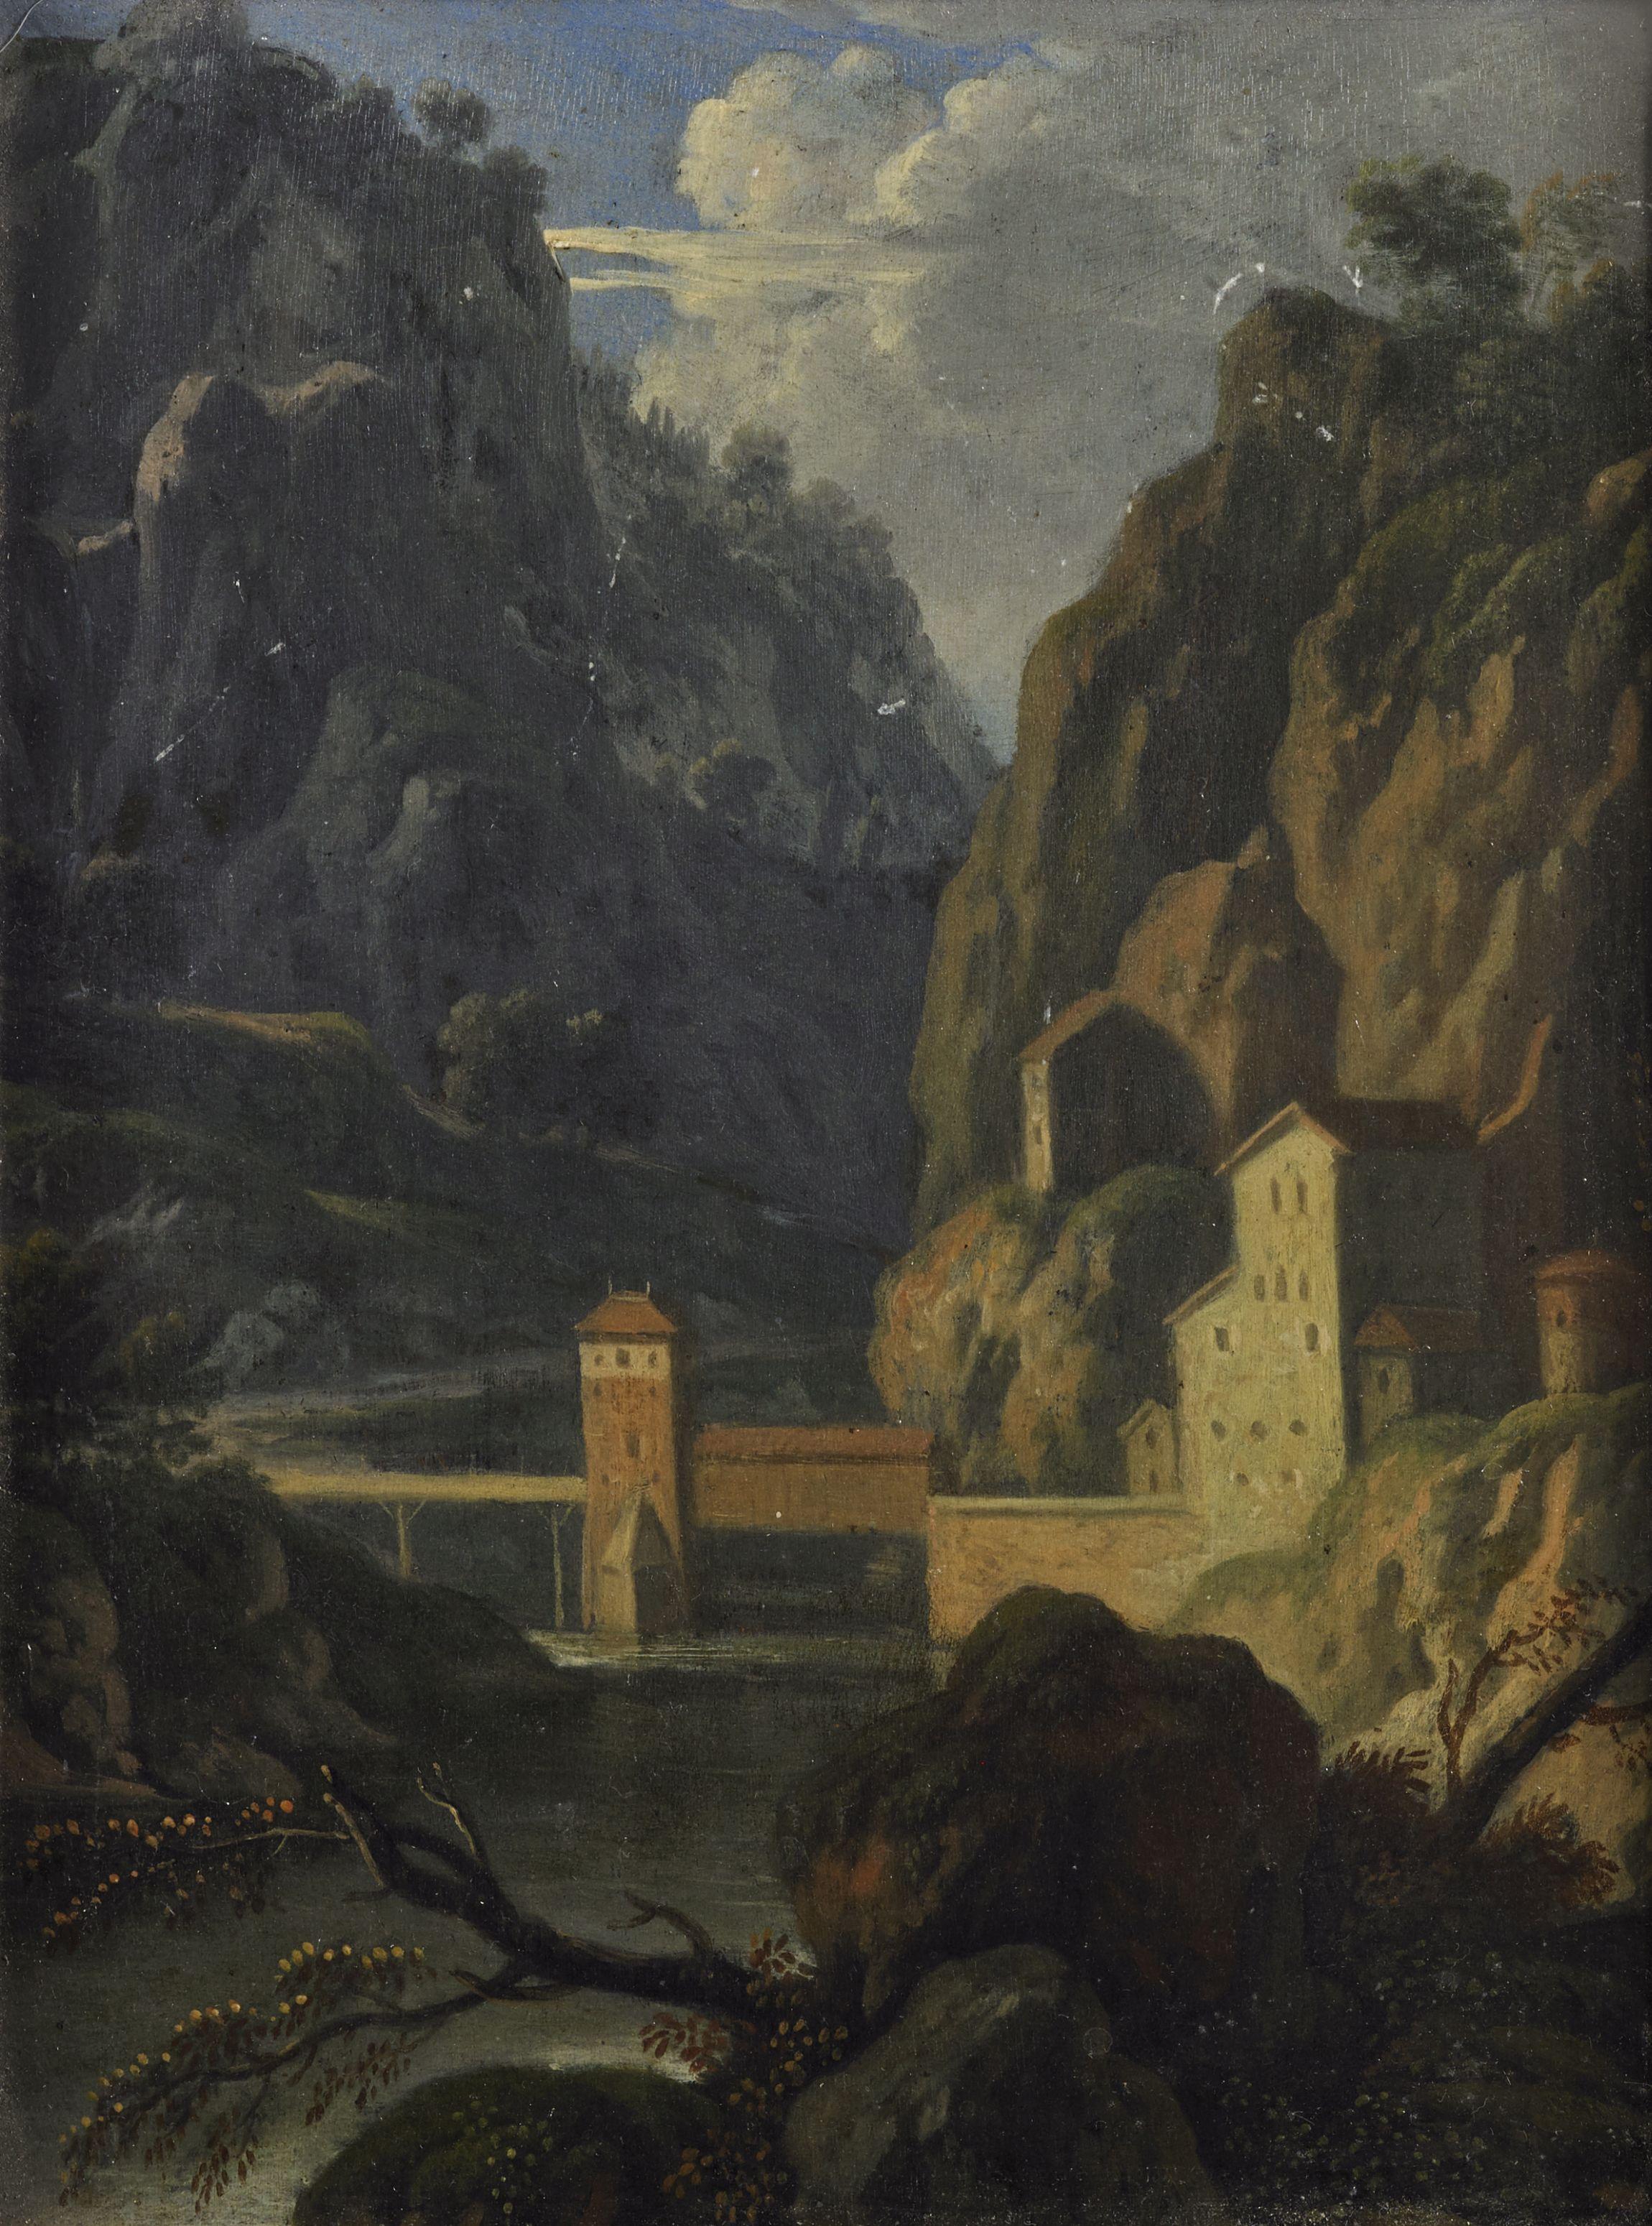 Unknown Landscape Painting – 17. Landschaft Flämische Schule Häuser Brücke Bäume Öl auf Leinwand Grün Braun